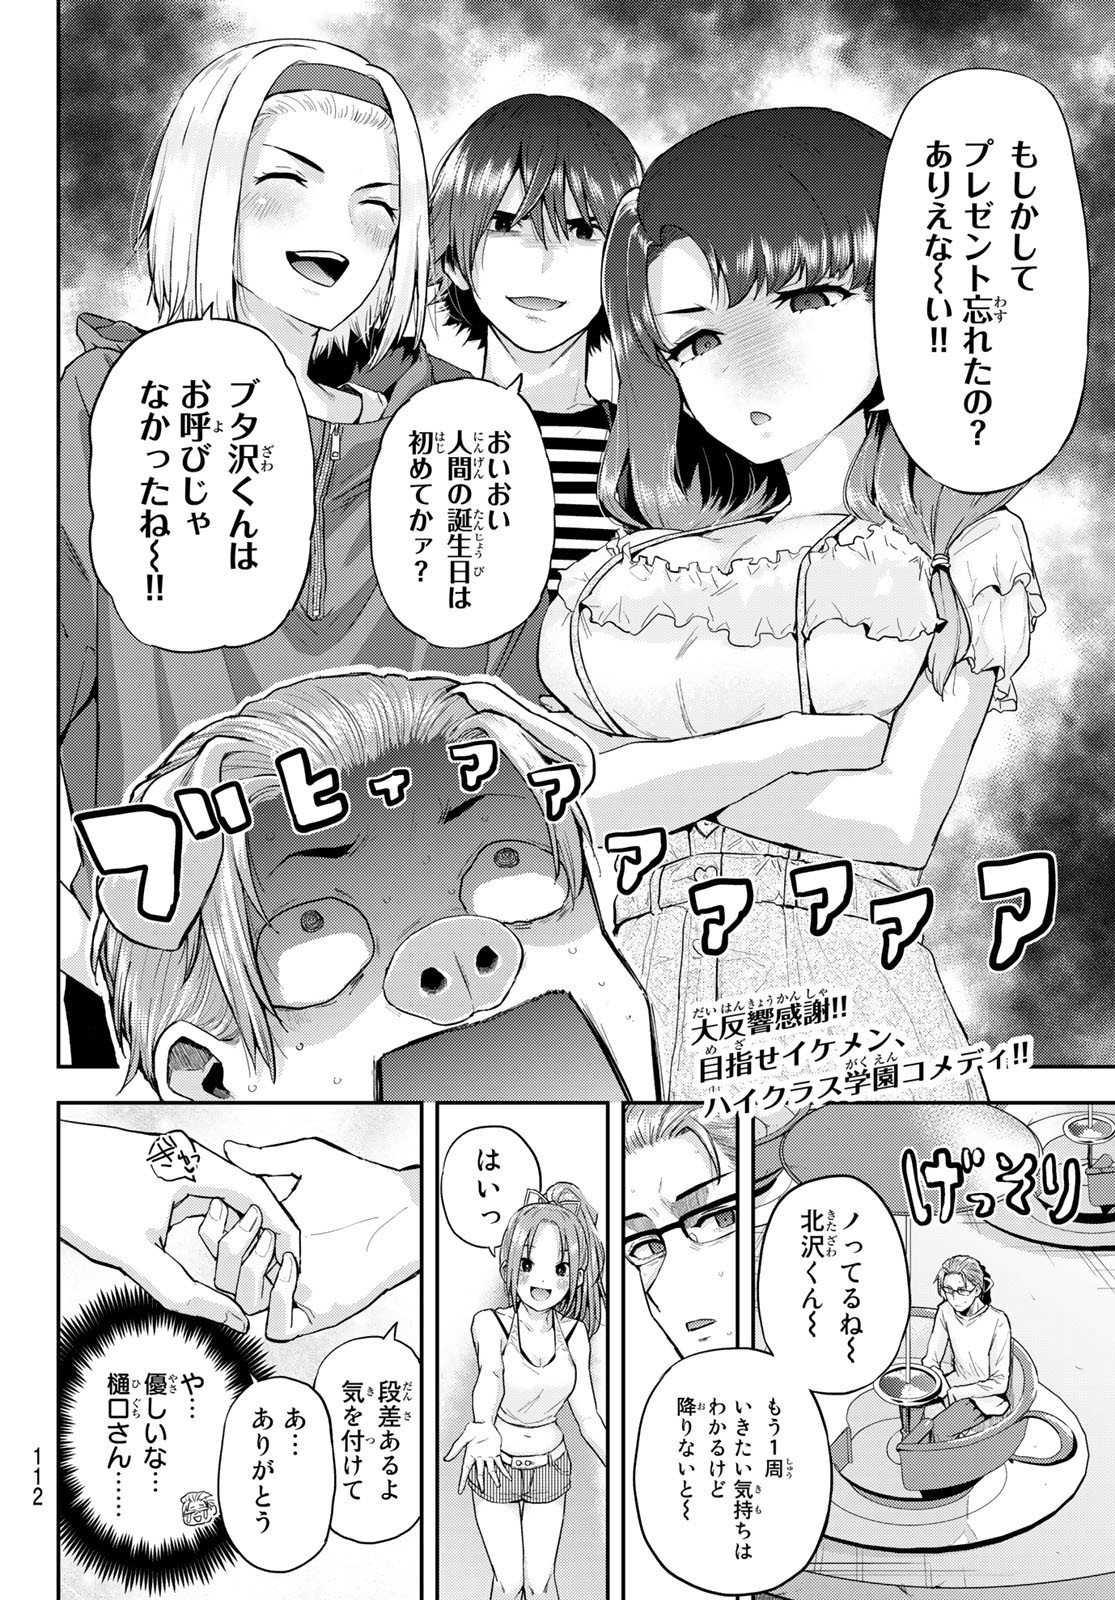 Kitazawa-kun wa A Class - Chapter 003 - Page 2